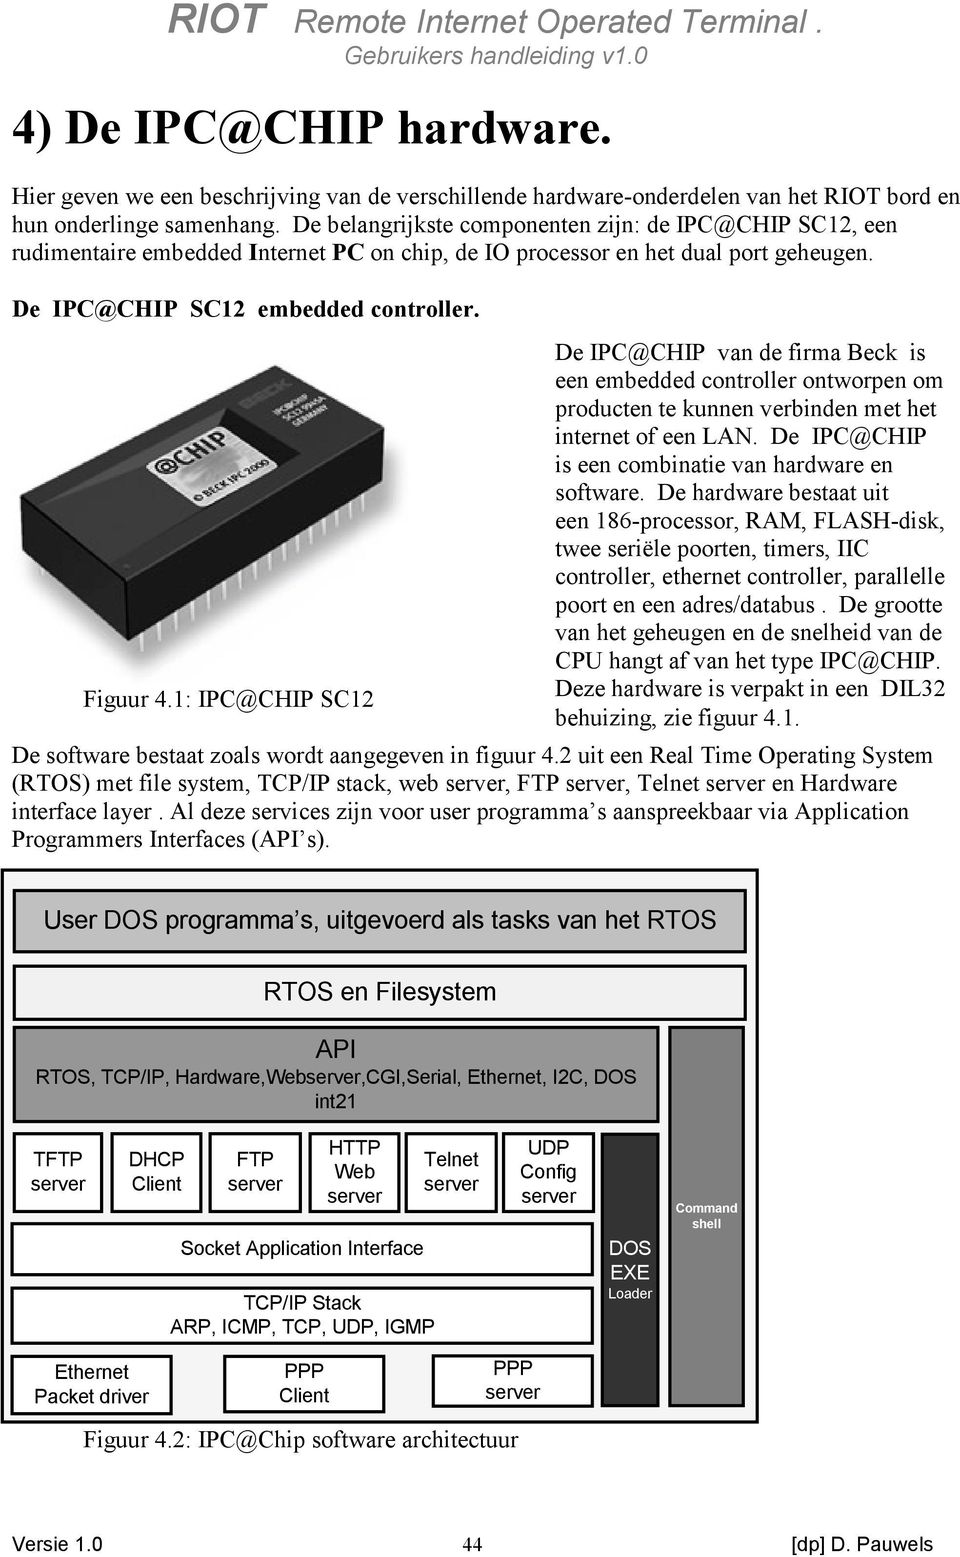 De IPC@CHIP van de firma Beck is een embedded controller ontworpen om producten te kunnen verbinden met het internet of een LAN. De IPC@CHIP is een combinatie van hardware en software.